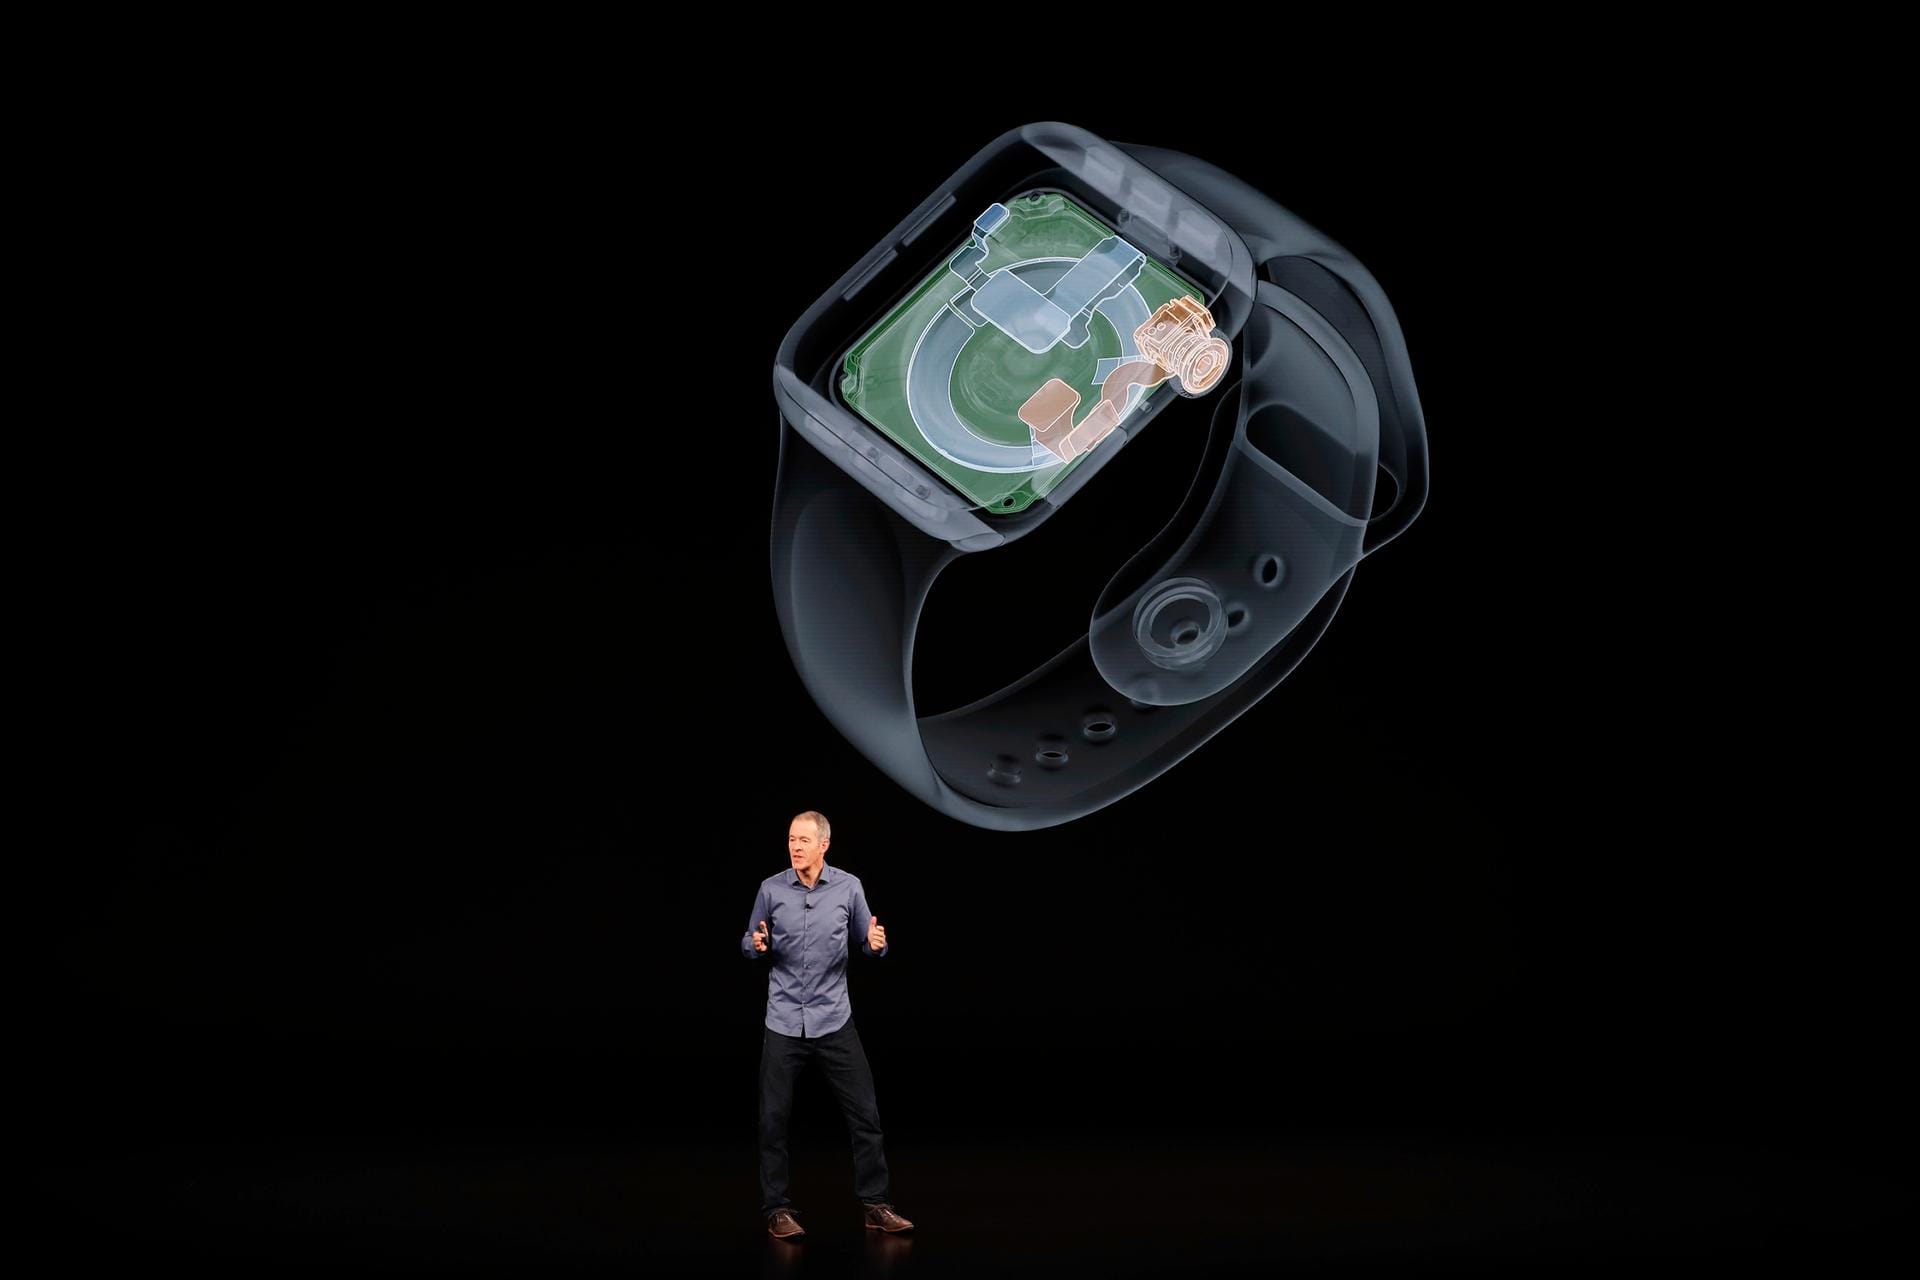 Apple ist der erste Anbieter, der einen EKG-Sensor in einer Computer-Uhr unterbringen konnte. Die Apple Watch führt seit dem Start 2015 den Smartwatch-Markt an und hat nach Angaben des Unternehmens auch klassische Uhrenmarken überholt